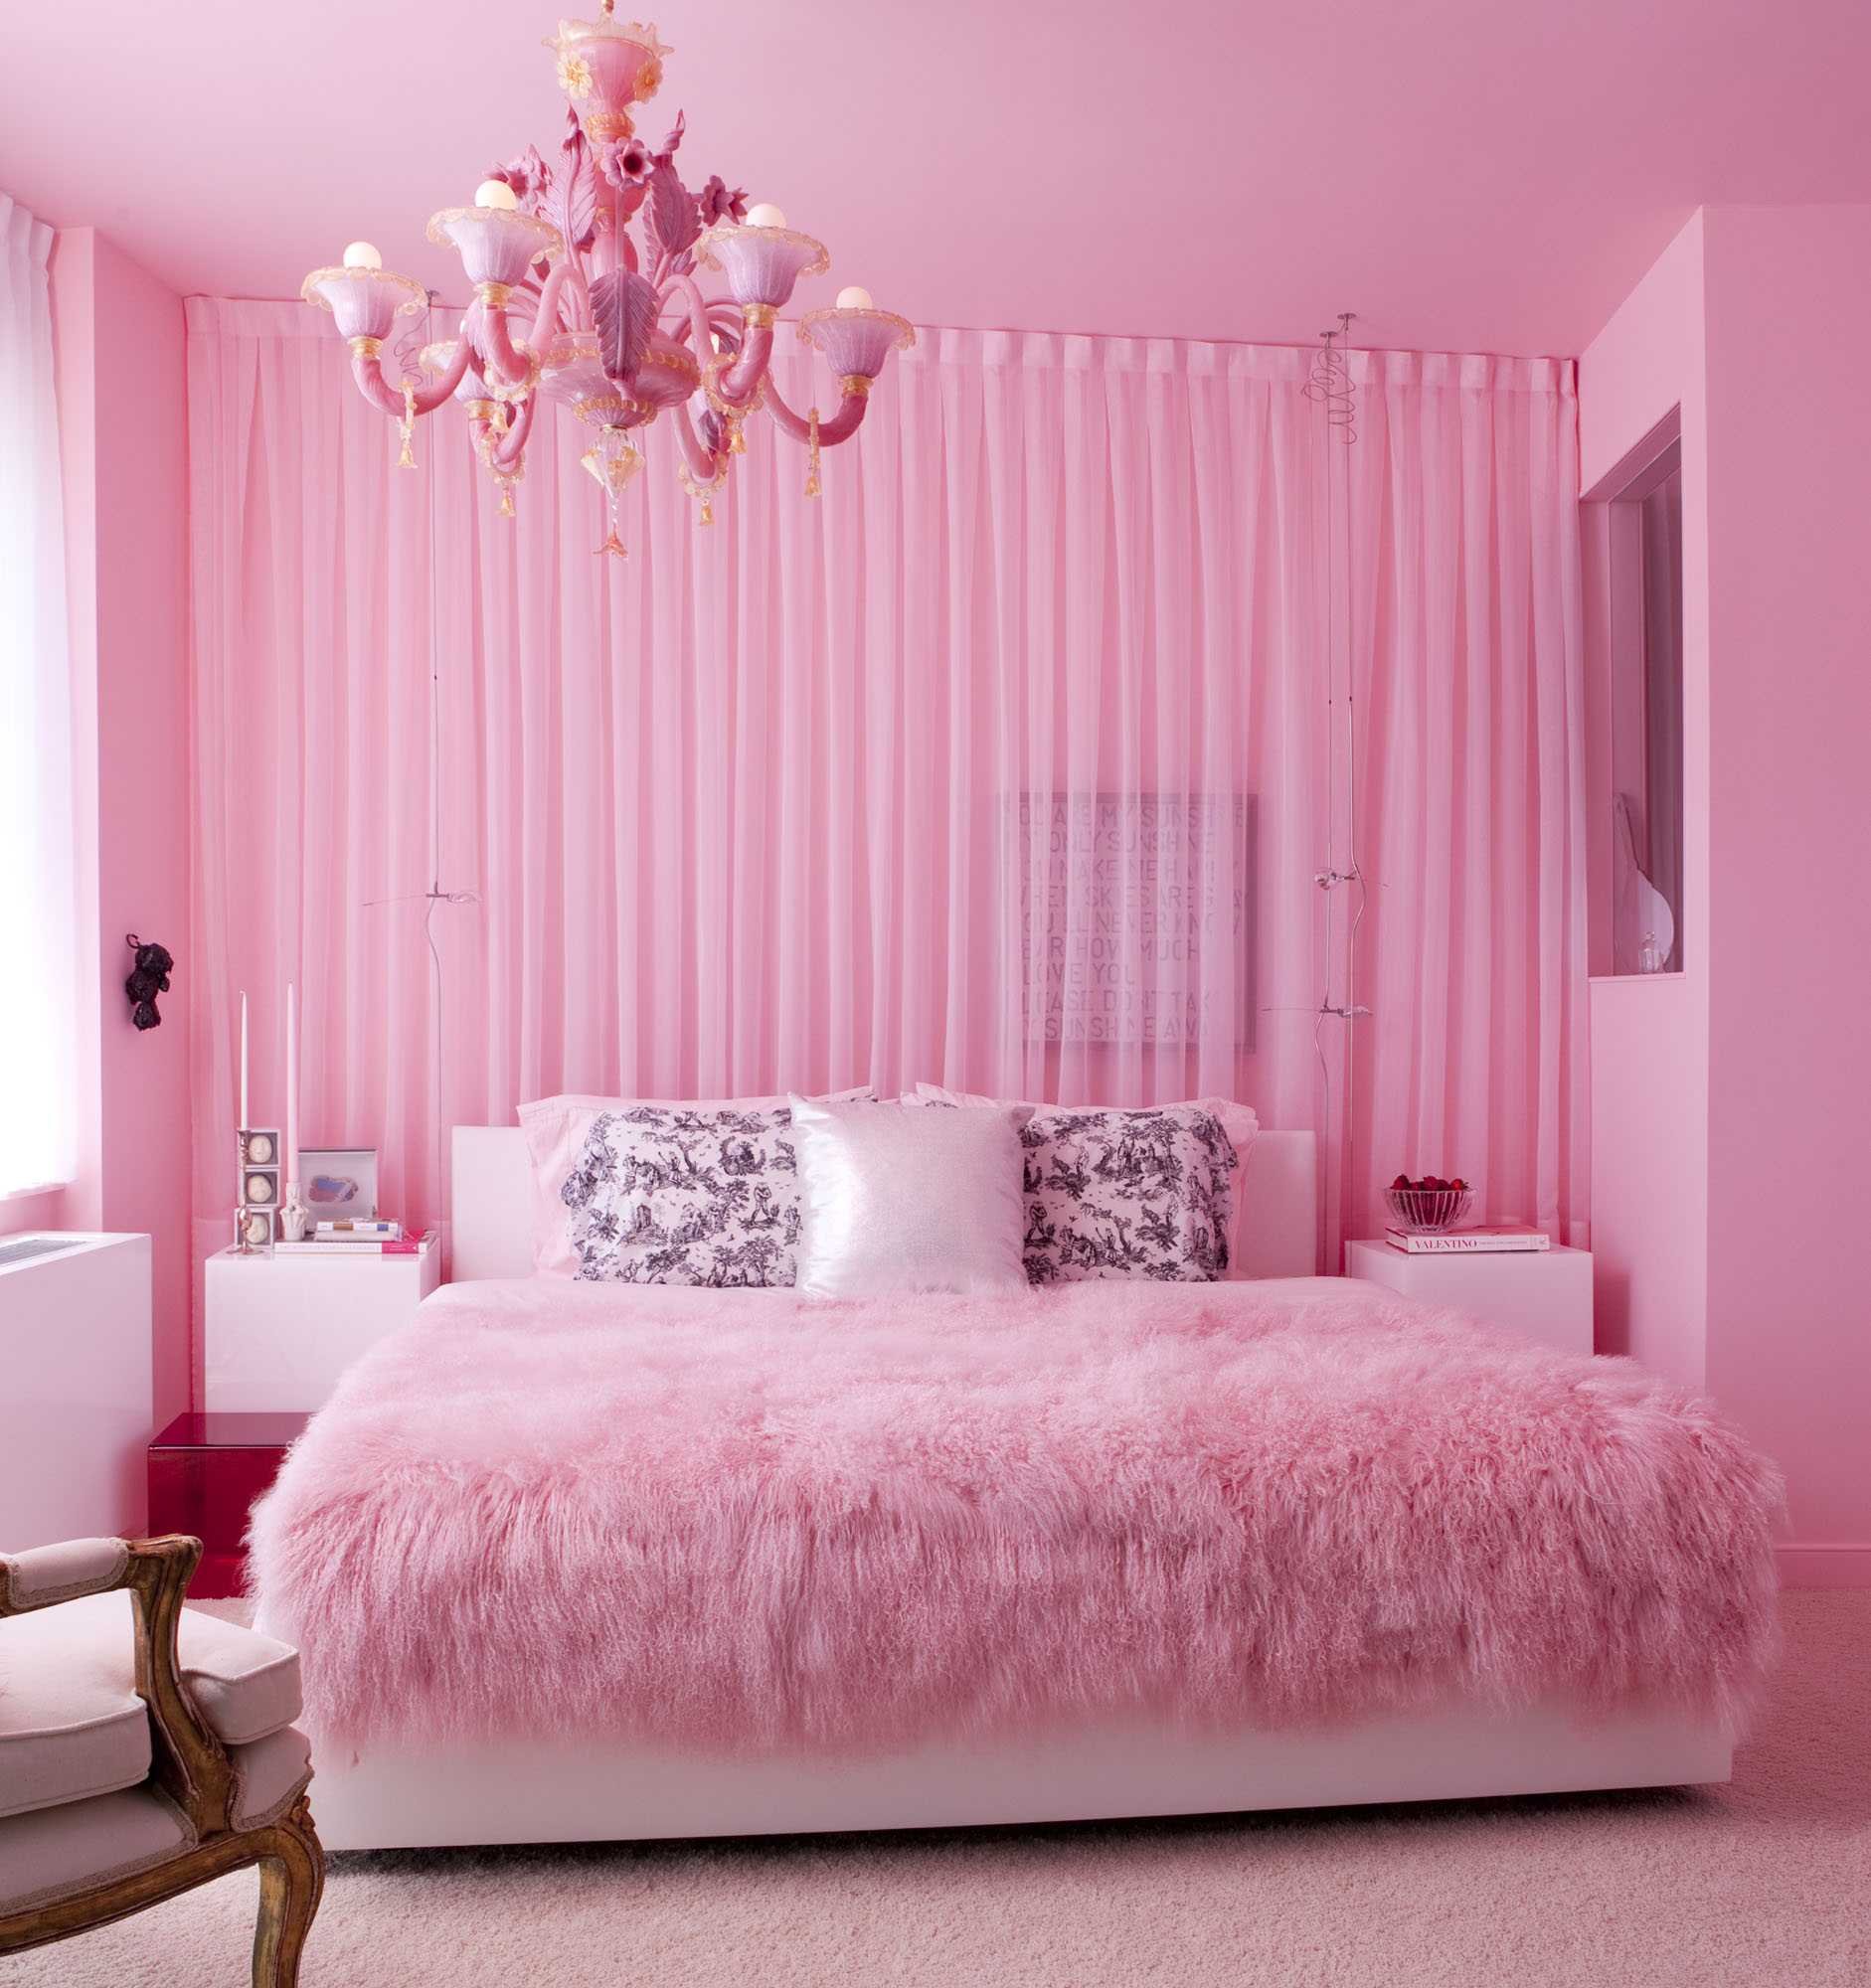 Розовый белый видео. Розовая спальня. Спальня для девочки в розовых тонах. Розовые шторы в интерьере спальни. Спальня в розовых тонах.